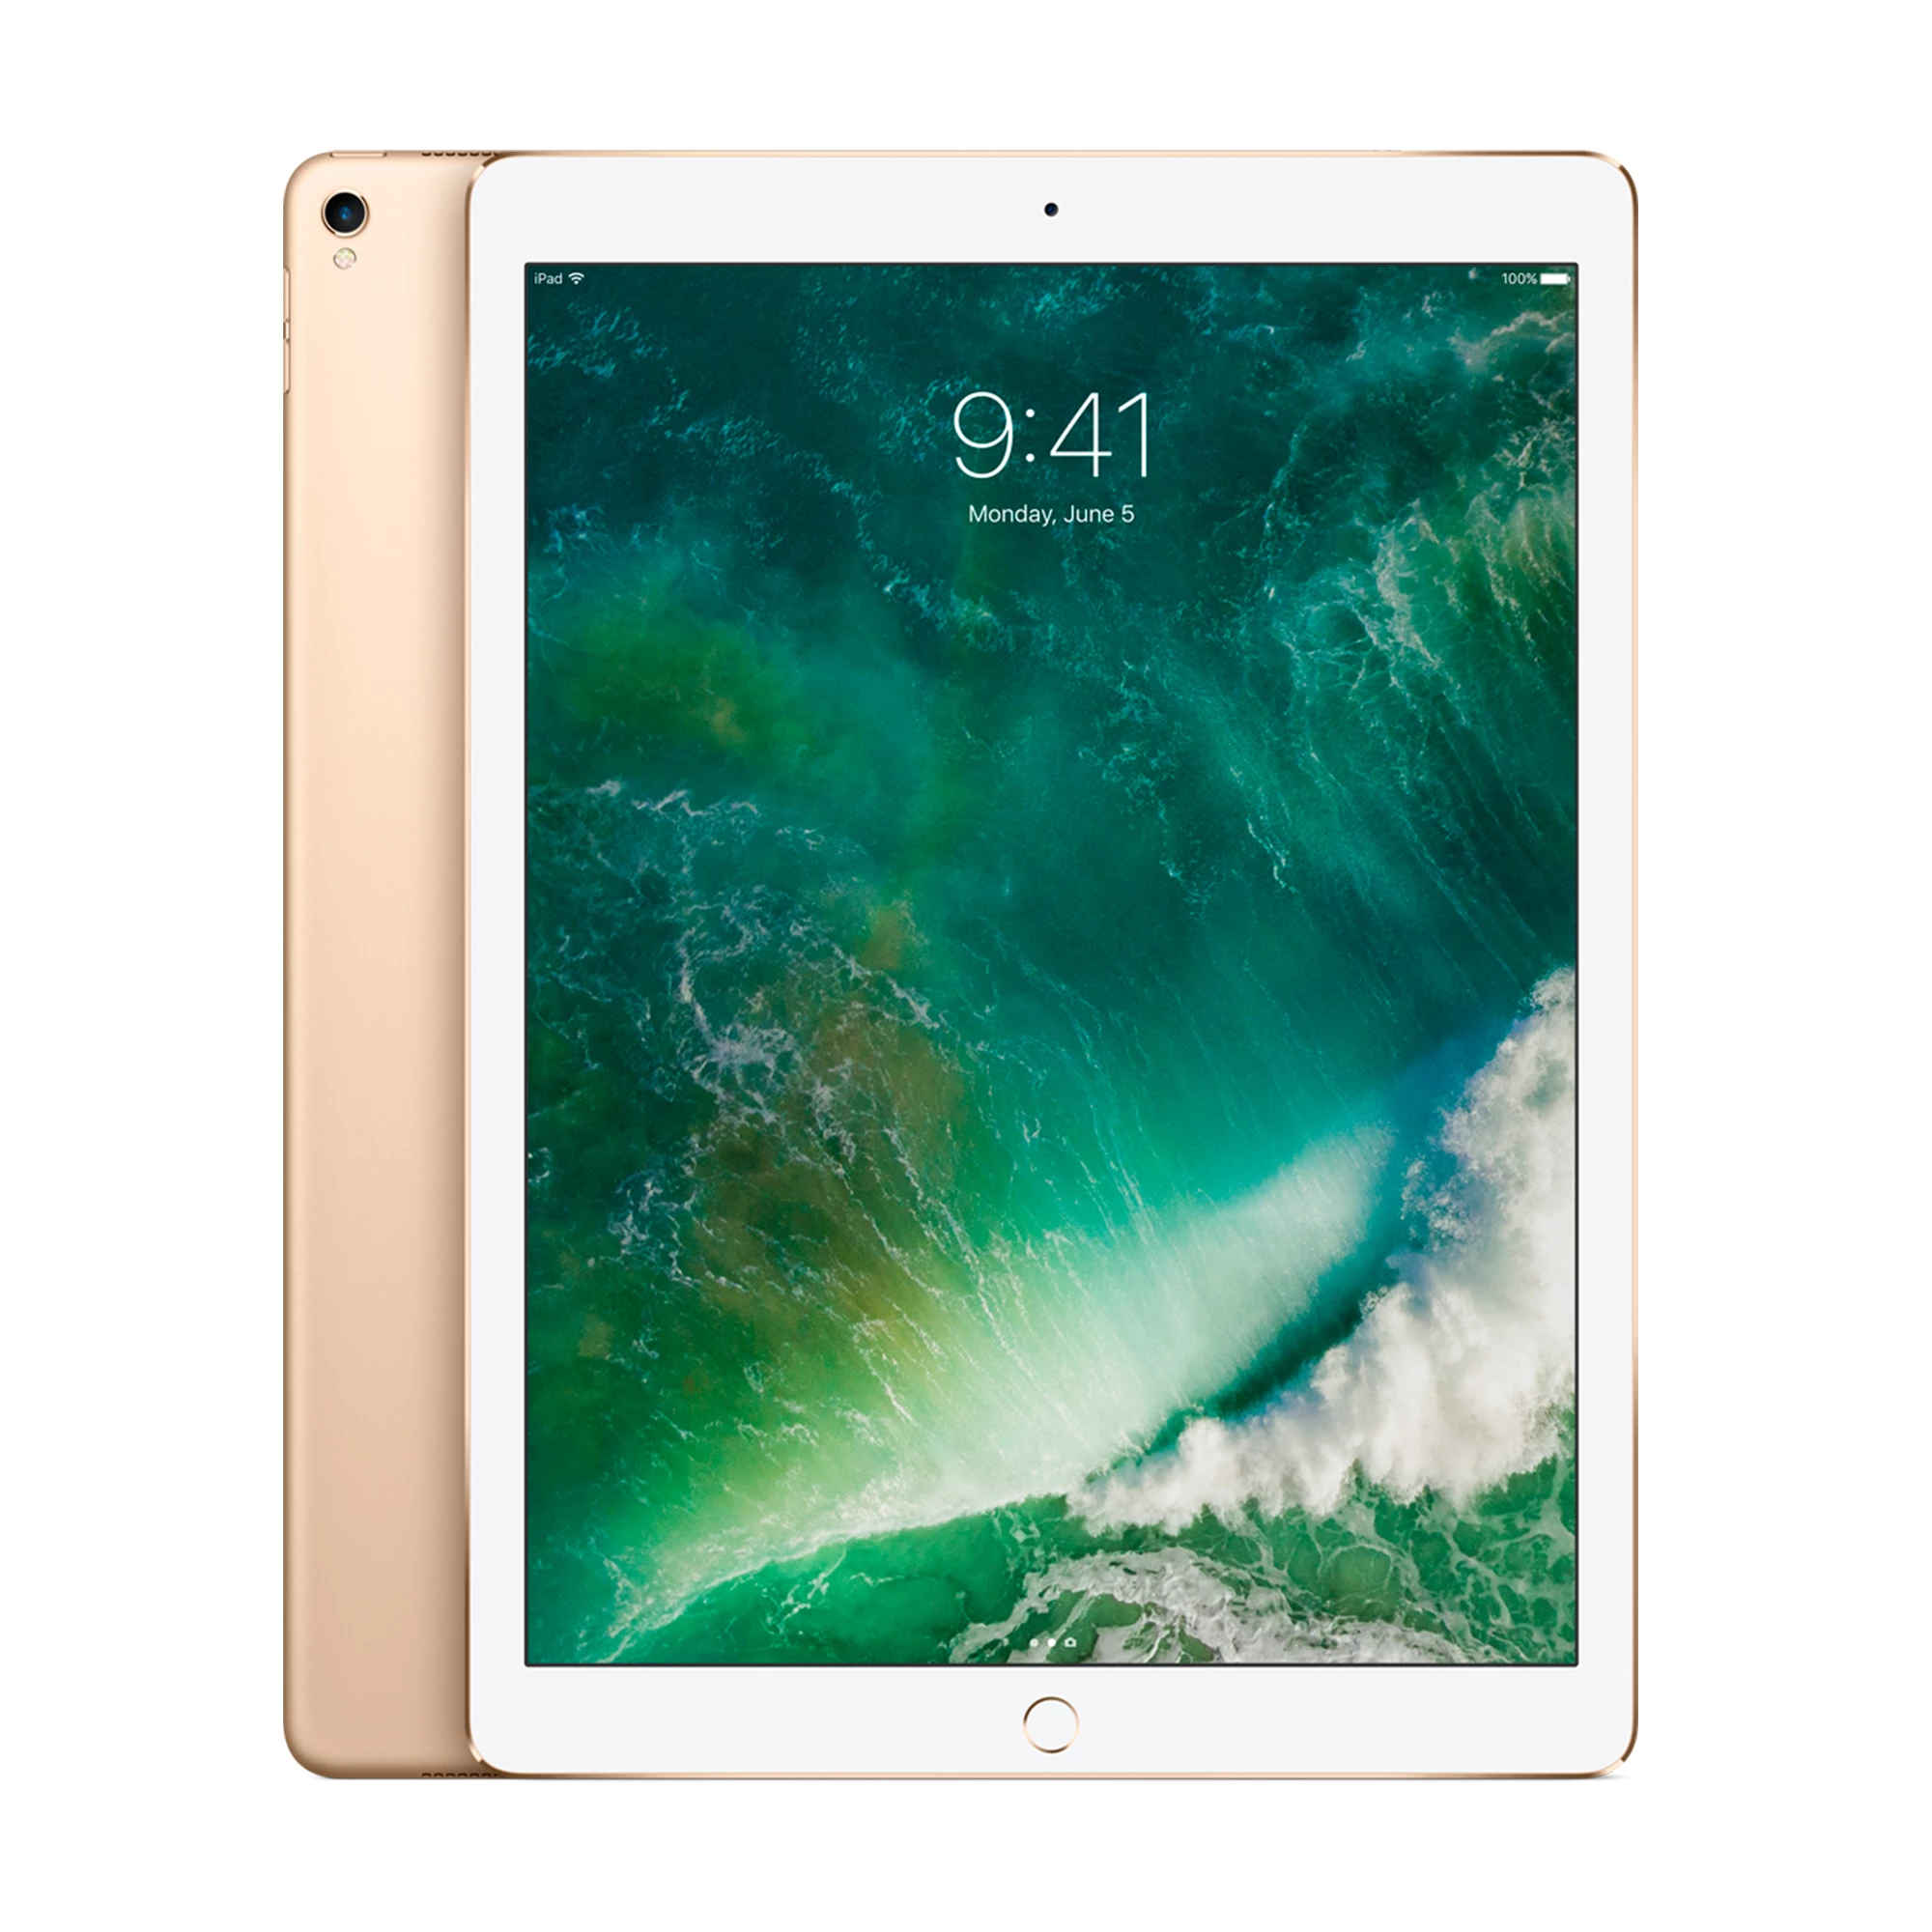 iPad Pro 12.9" (2017) Wi-Fi 64GB Gold (MQDD2)